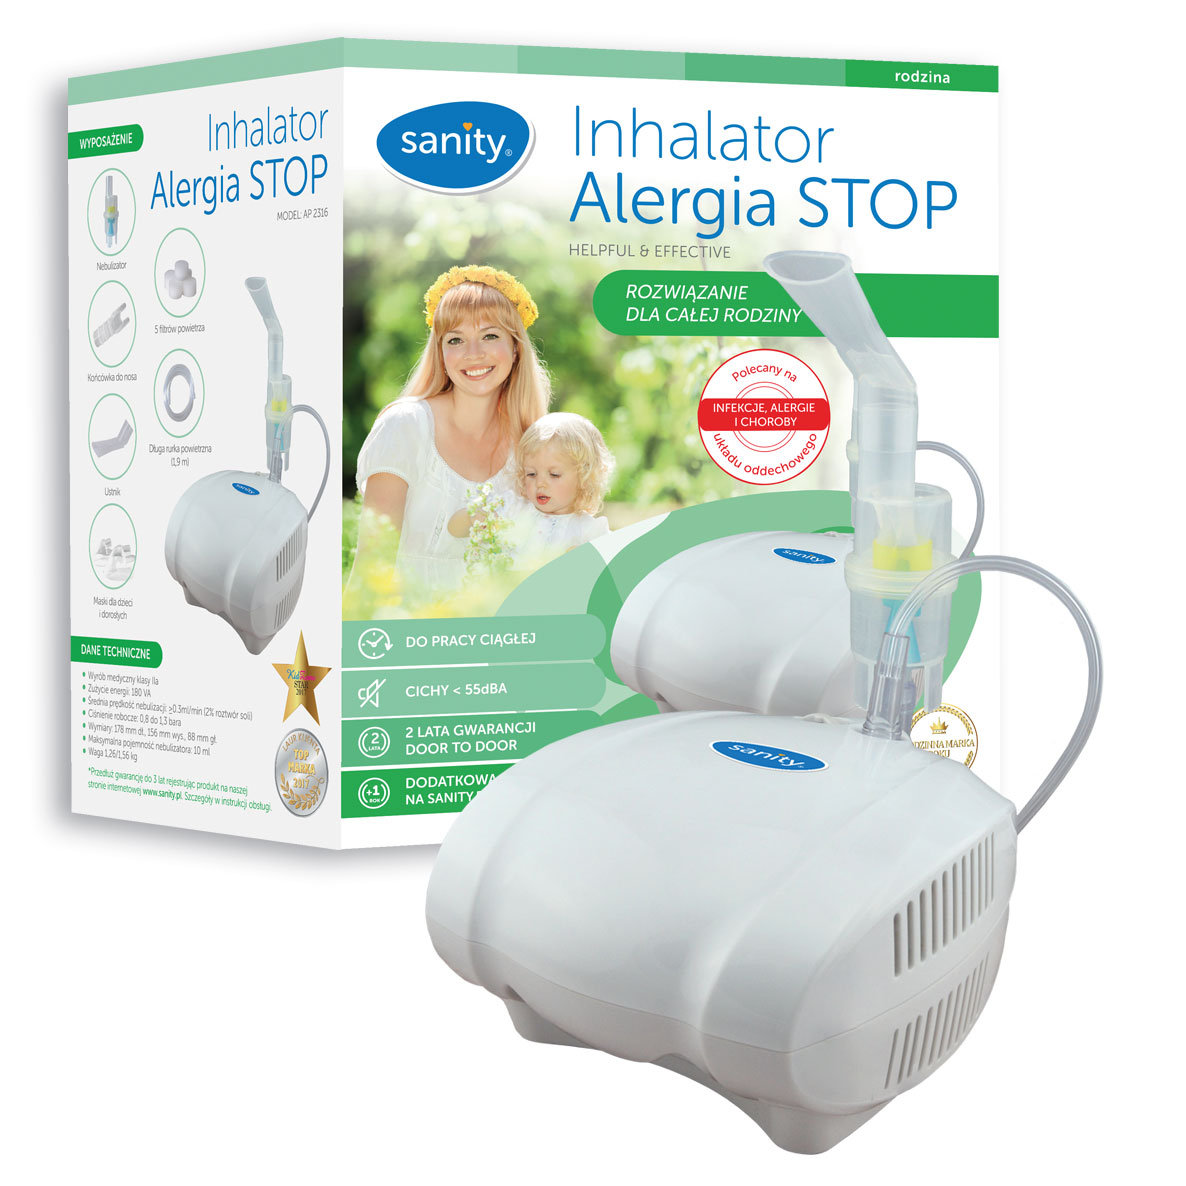 Фото - Інгалятор (небулайзер) Sanity Inhalator, dla dzieci i dorosłych Alergia Stop AP 2316, 1 sztuka 